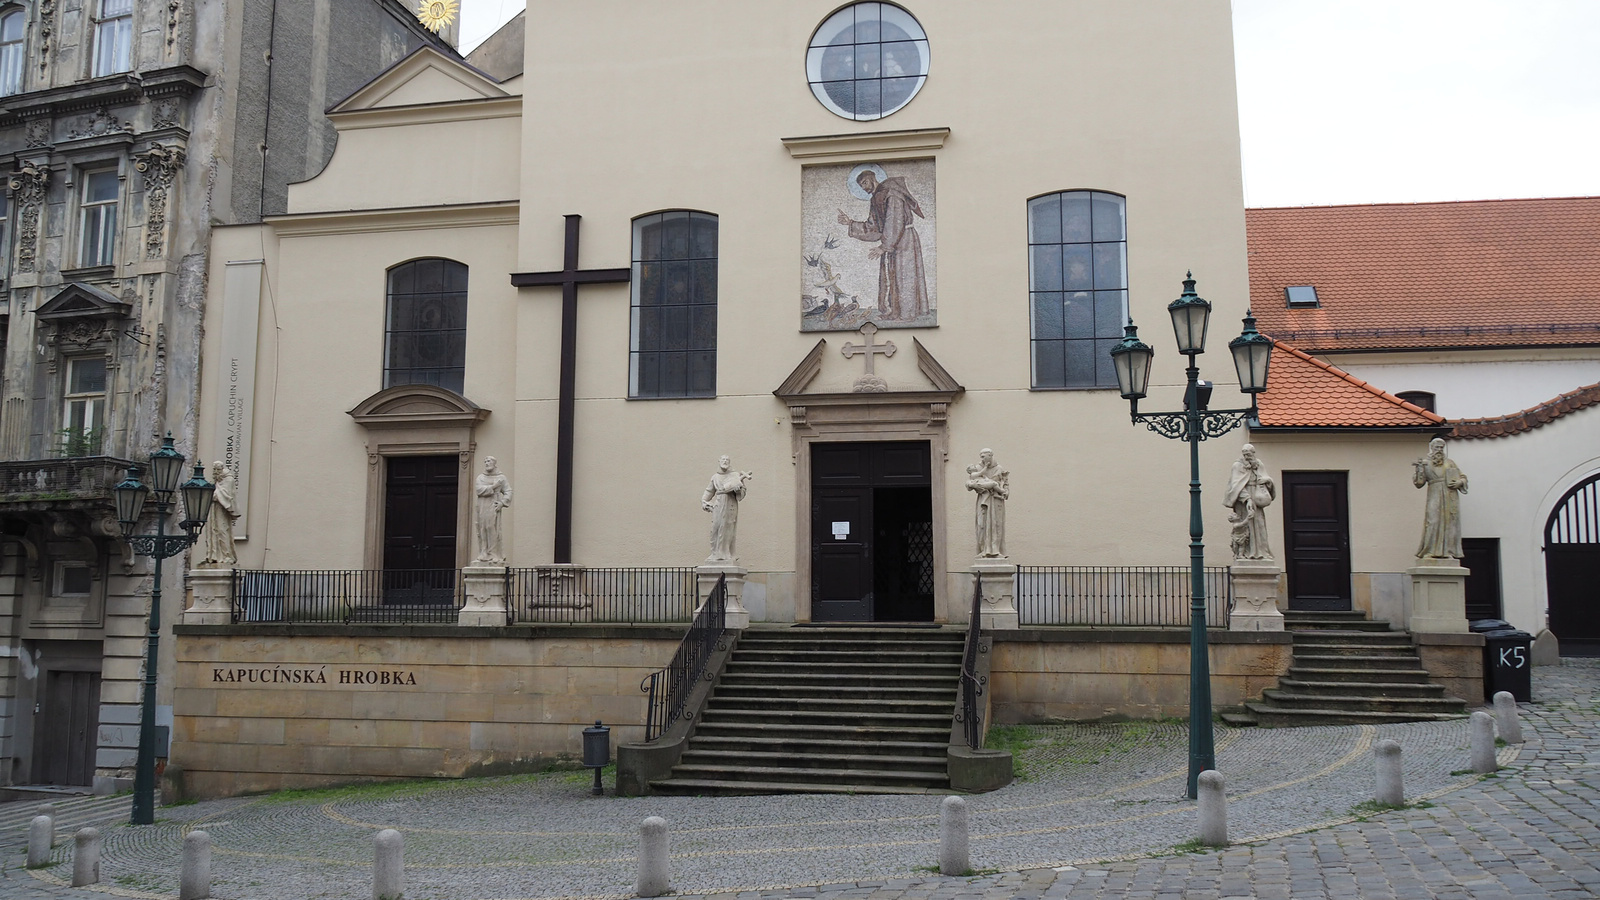 Brno, Kapucinusok Szent Kereszt temploma, SzG3